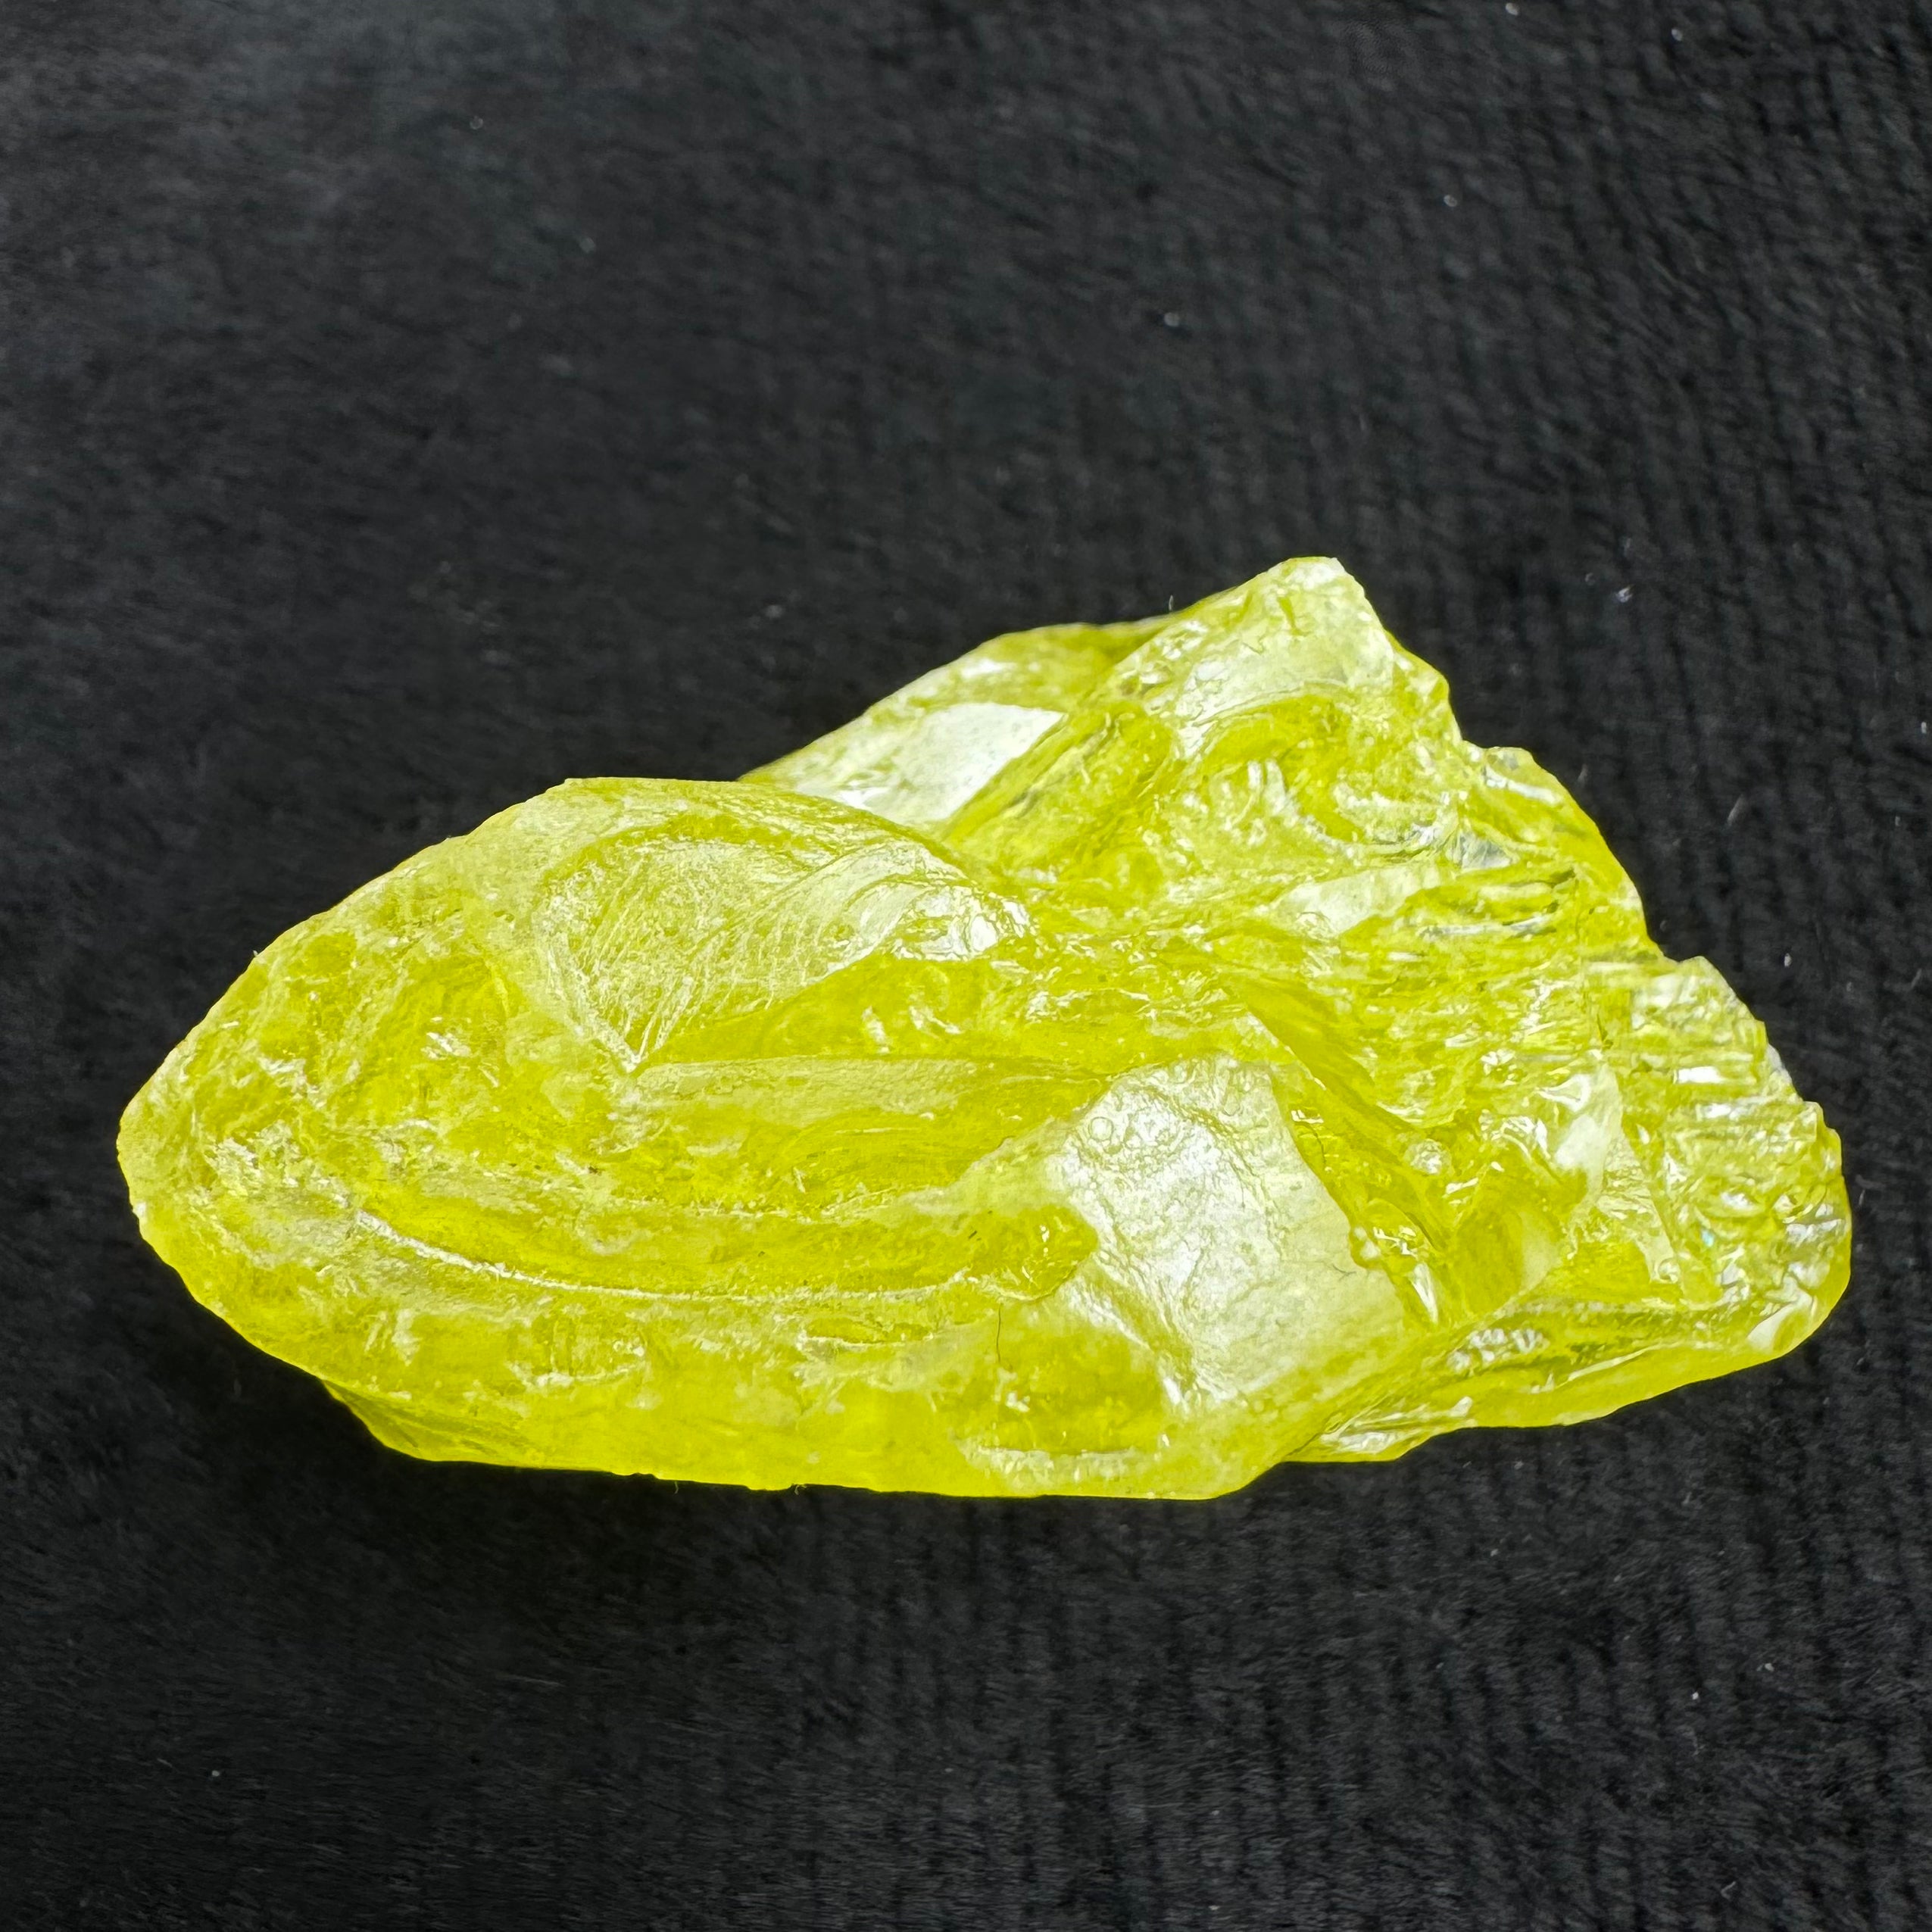 Sulfur Whole Crystal - 164